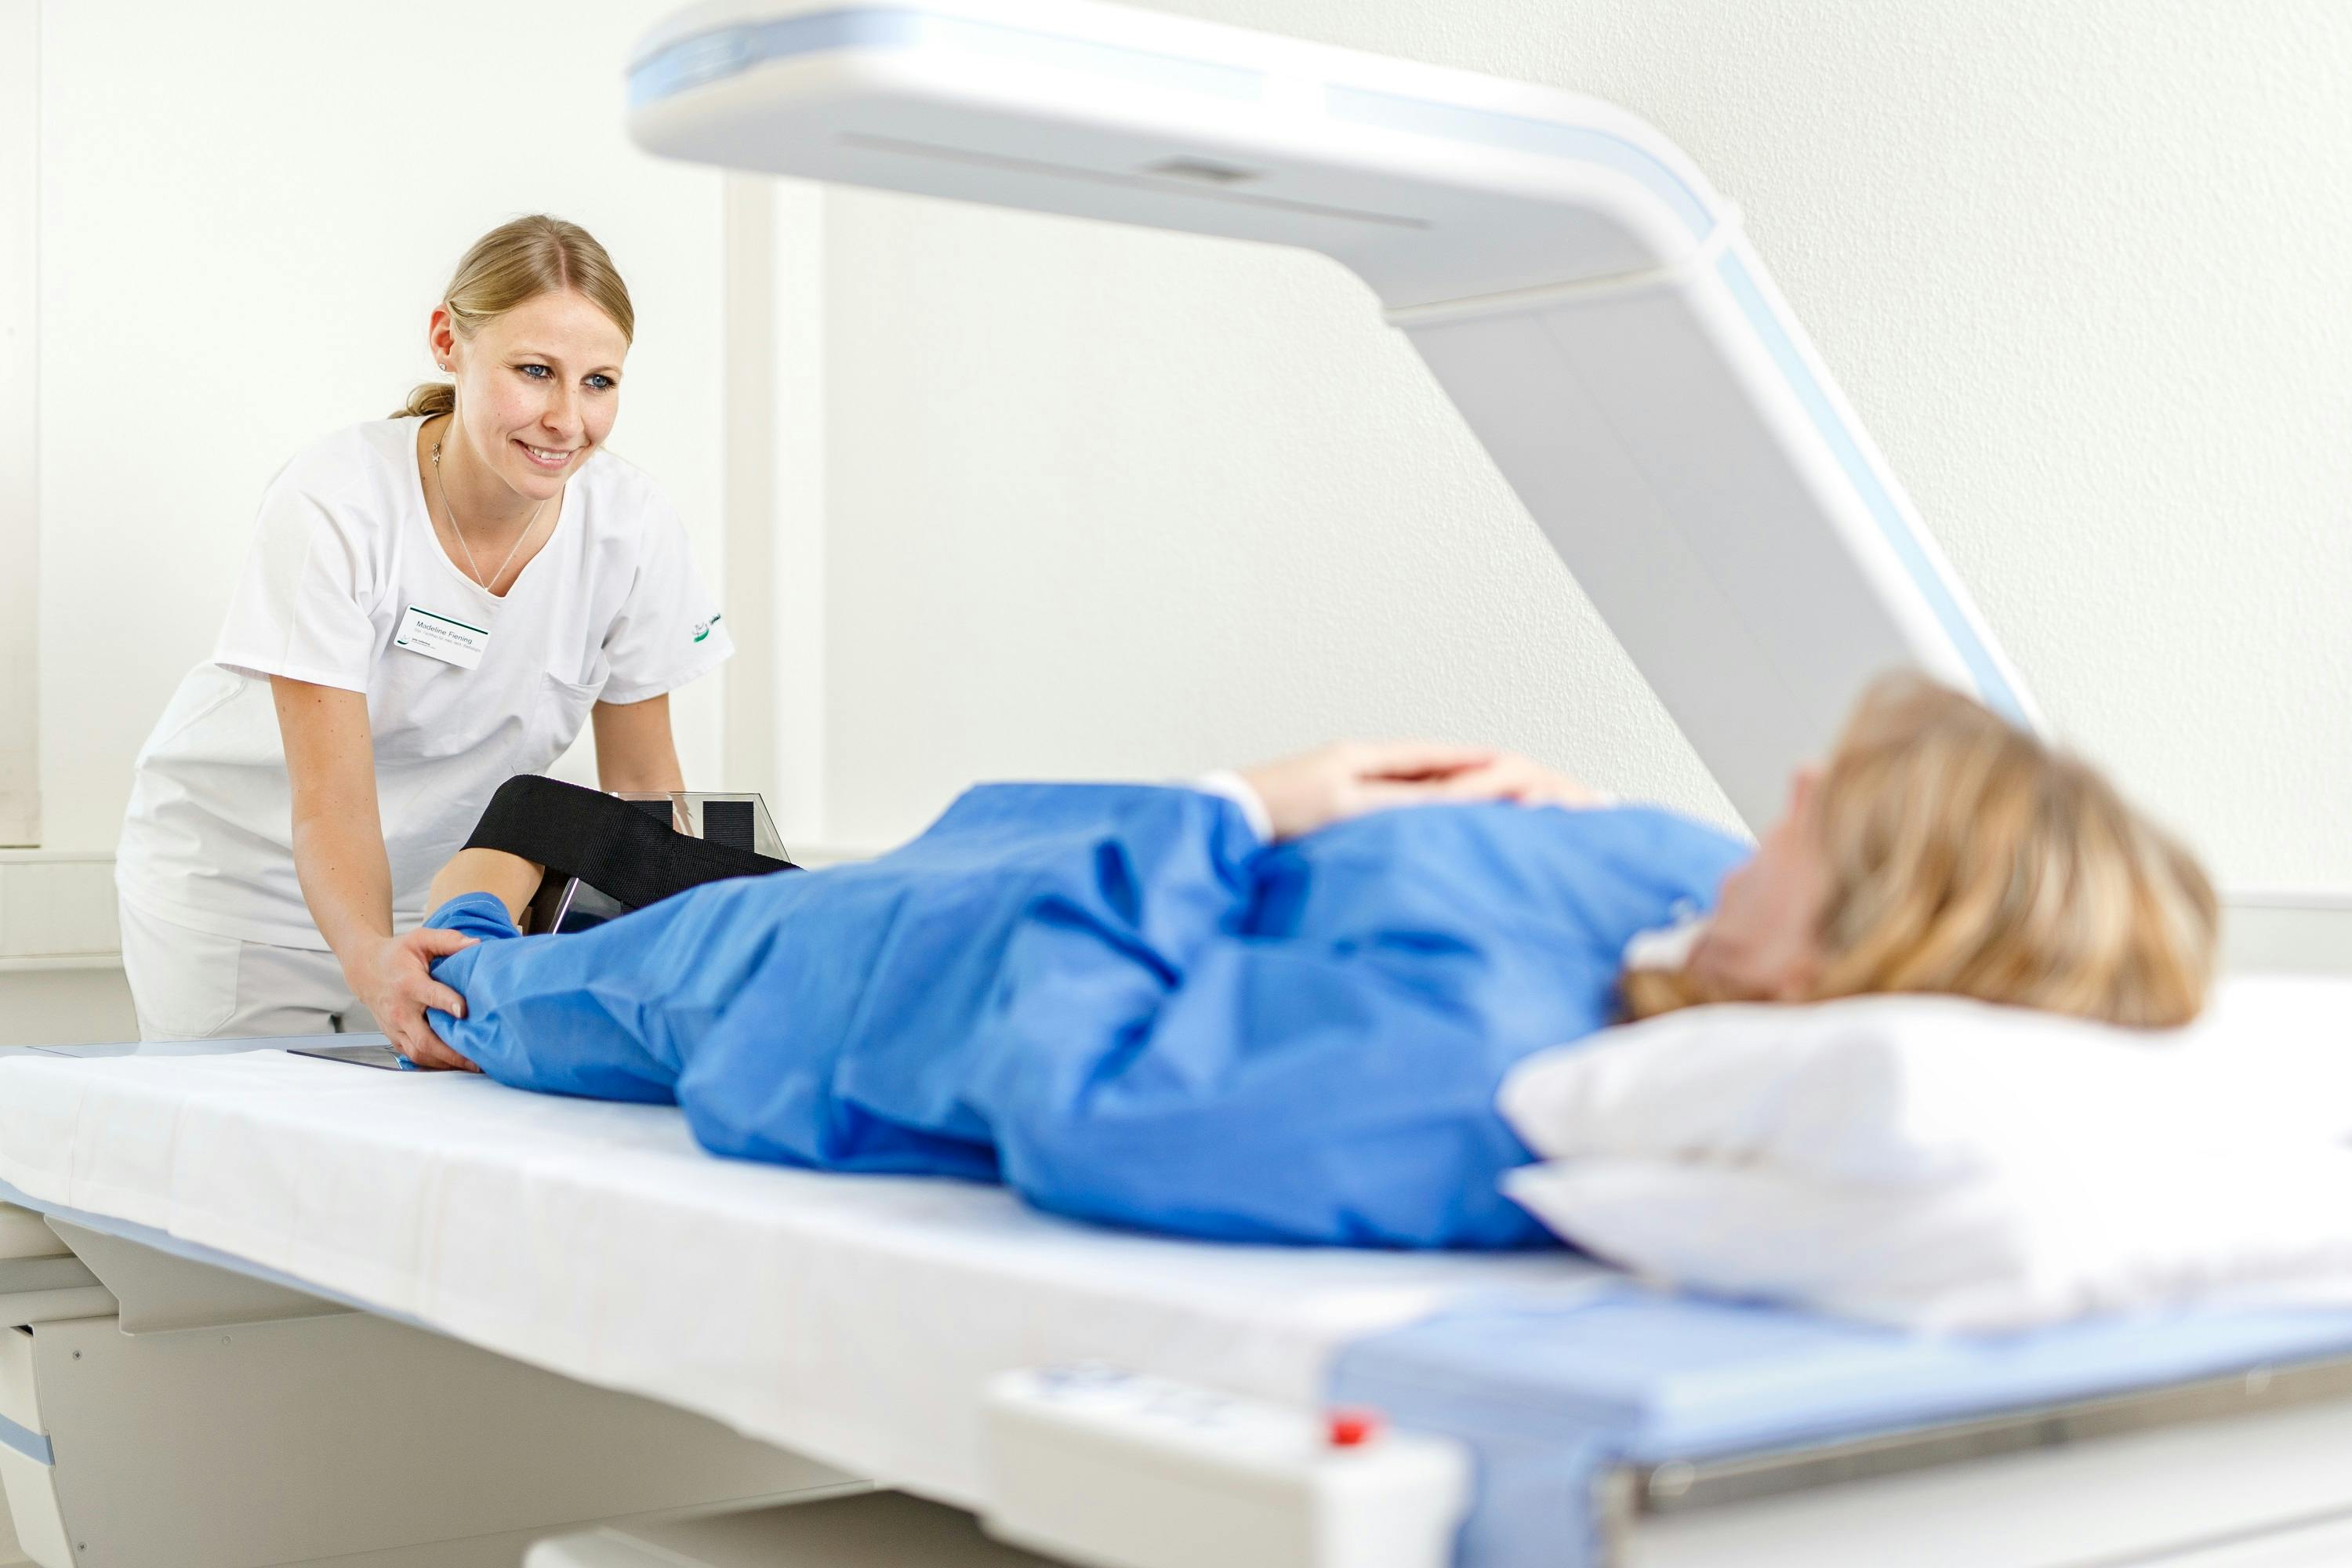 Medizinische Fachkraft bedient MRT-Gerät während Patientin untersucht wird.